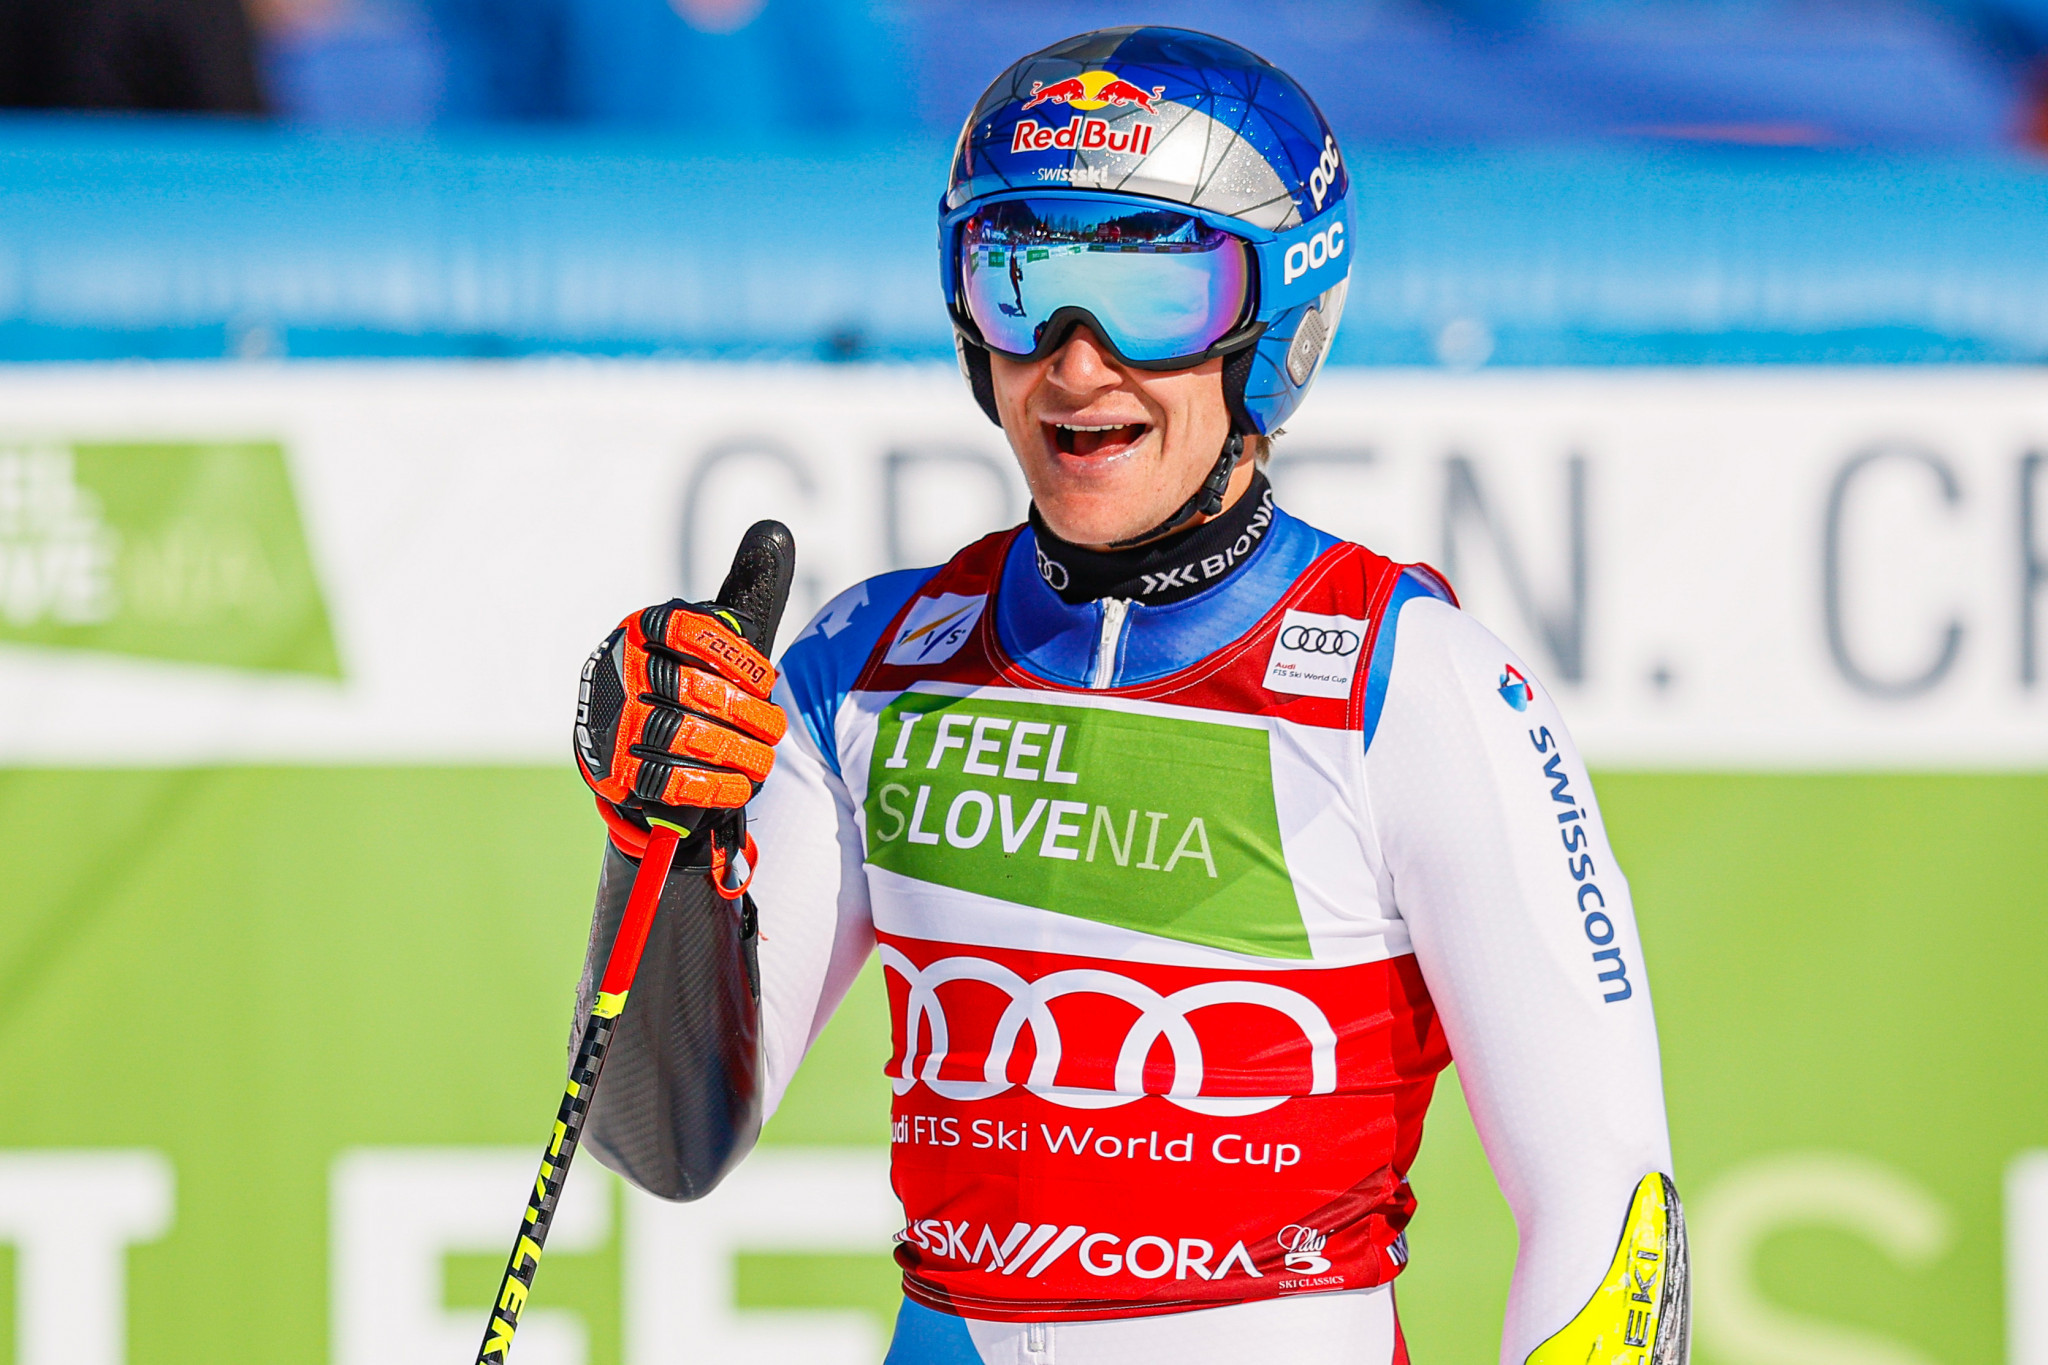 Odermatt earns giant slalom crystal globe as Kristoffersen wins in Kranjska Gora